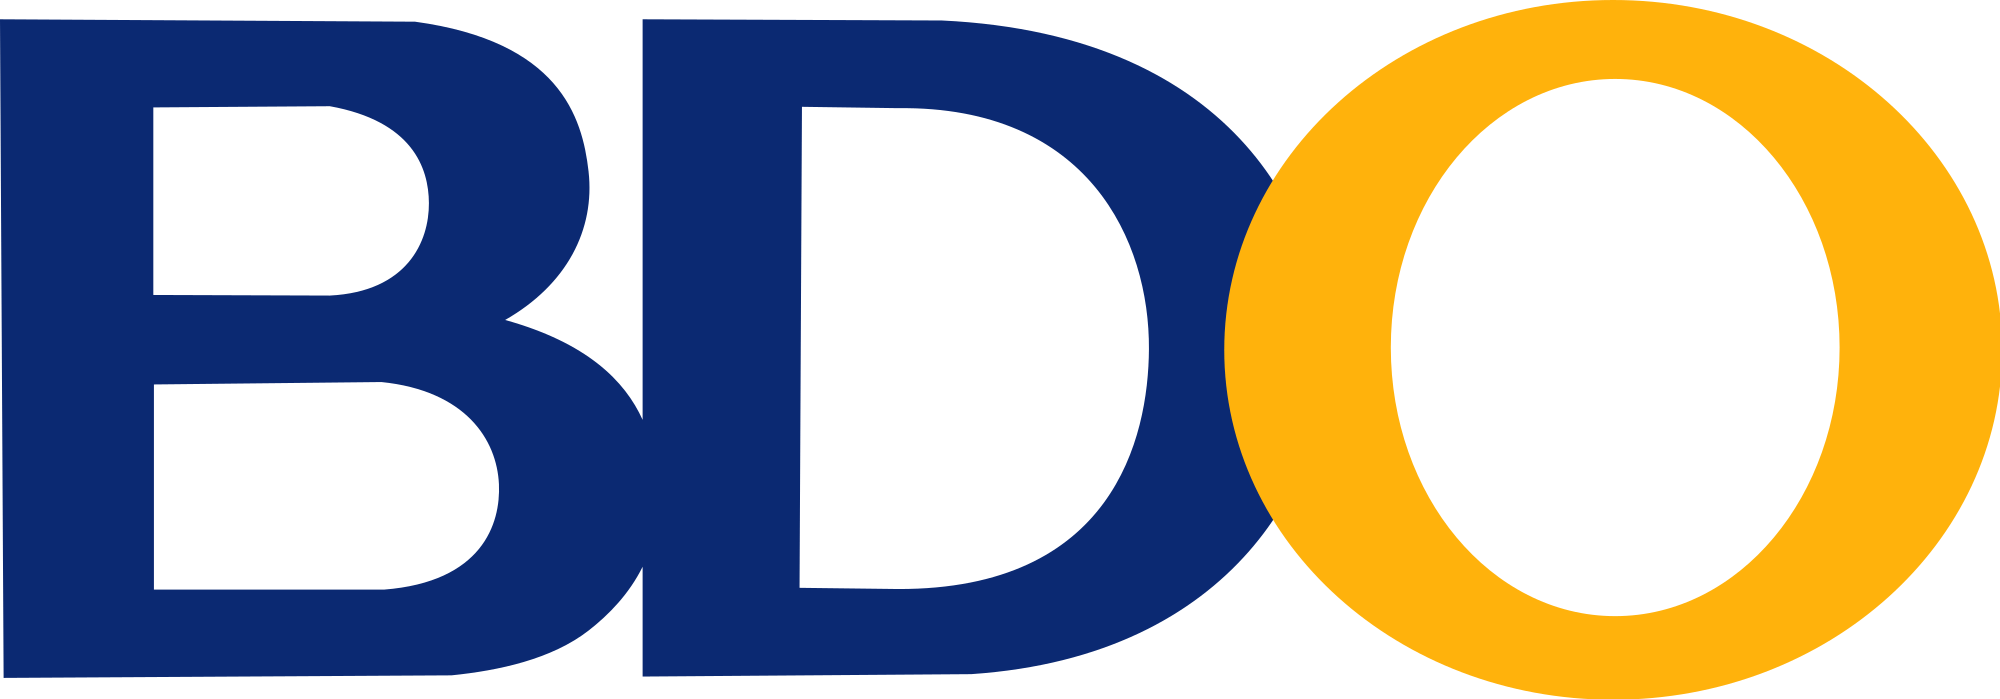 BDO Logo - BDO Unibank (logo).svg